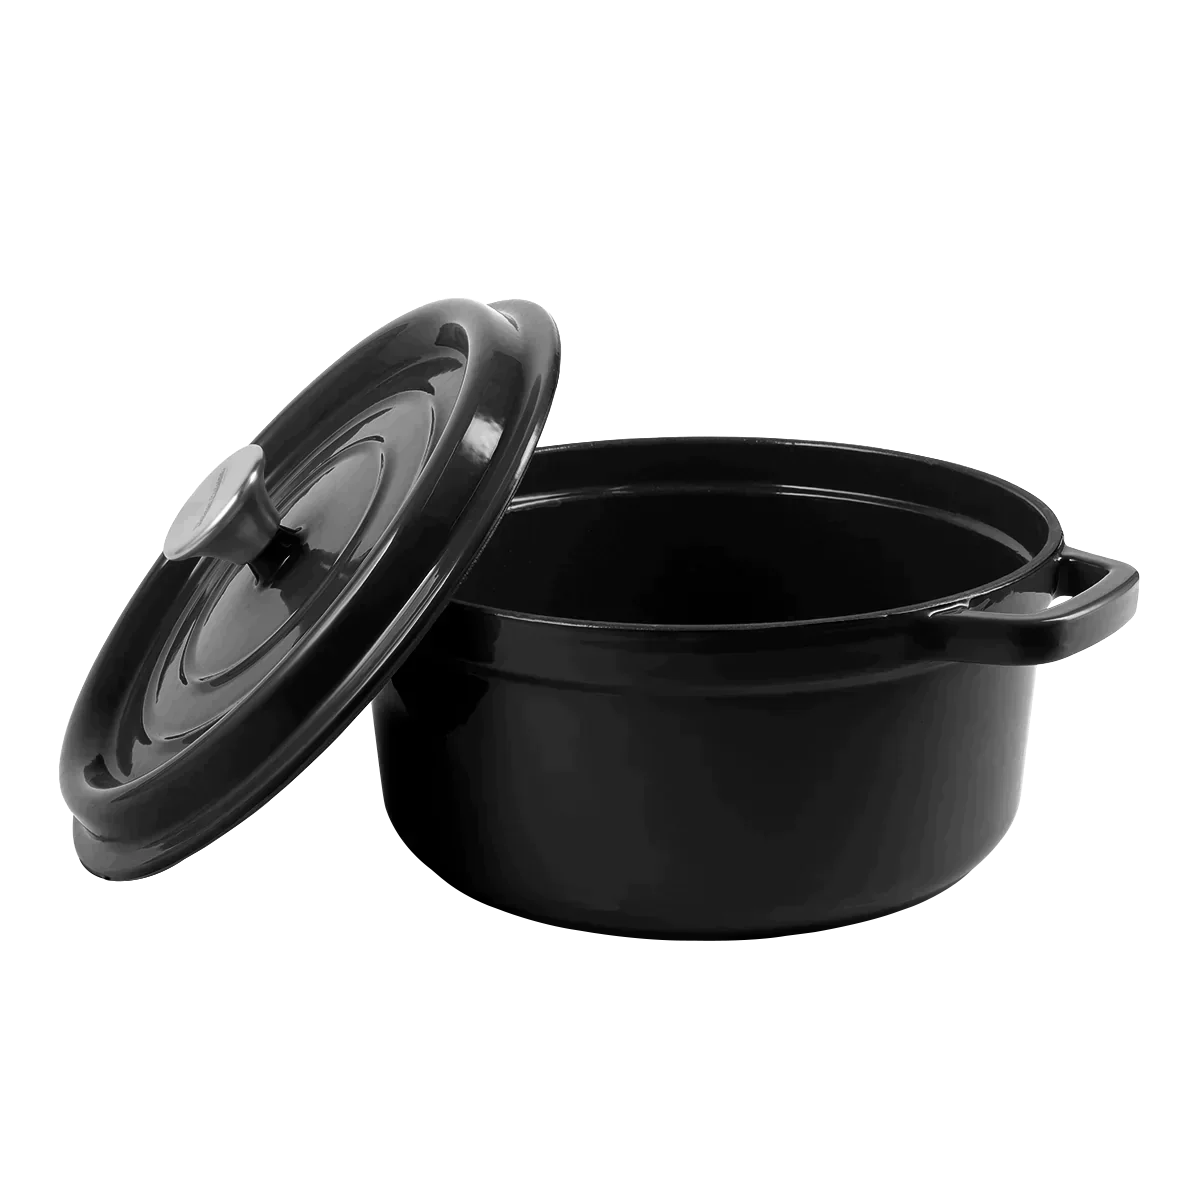 Enameled cast iron pot with lid 4,3L Vintage Cuisine